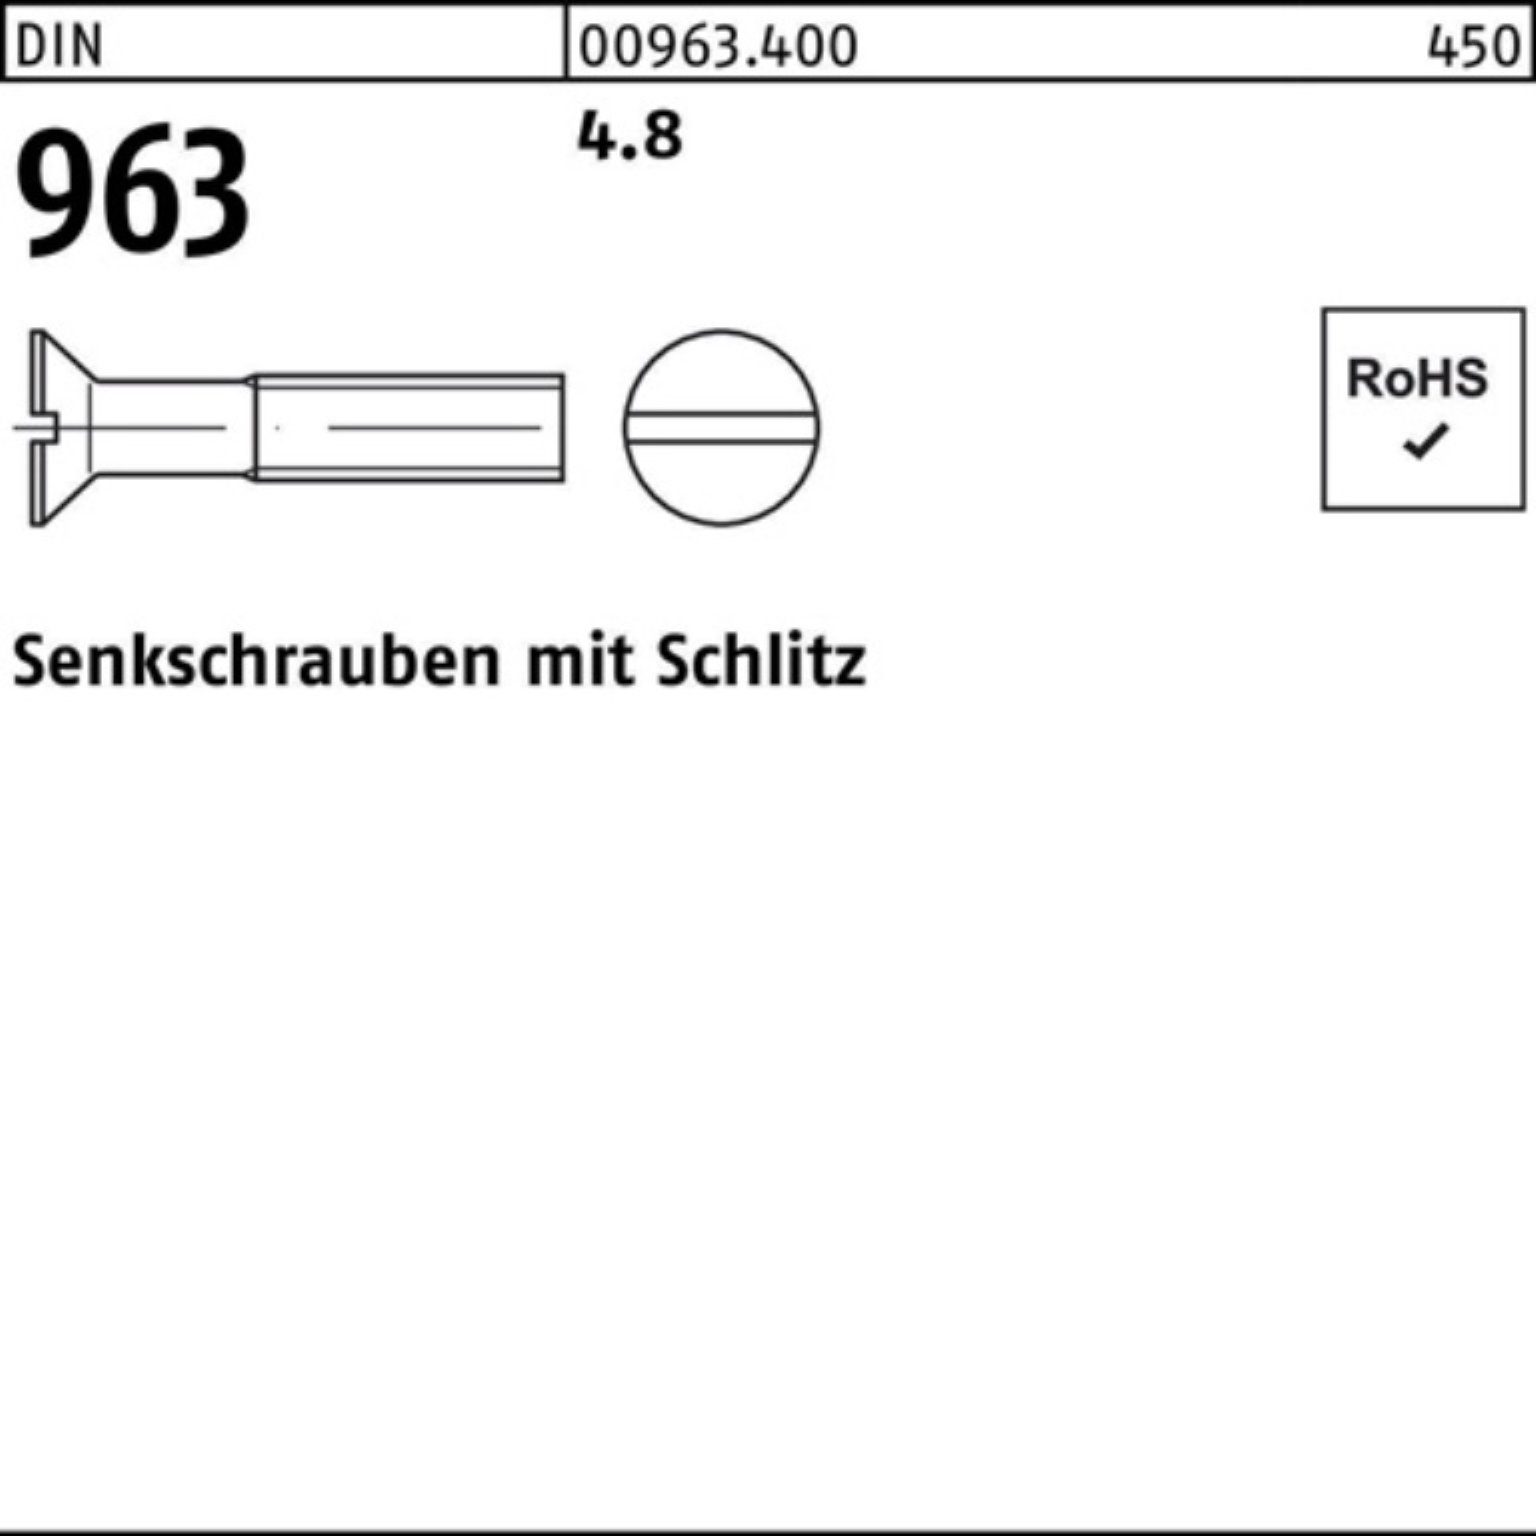 Senkschraube Reyher Senkschraube 4.8 963 25 Stück M20x 50 DIN Pack 963 100er Schlitz DIN